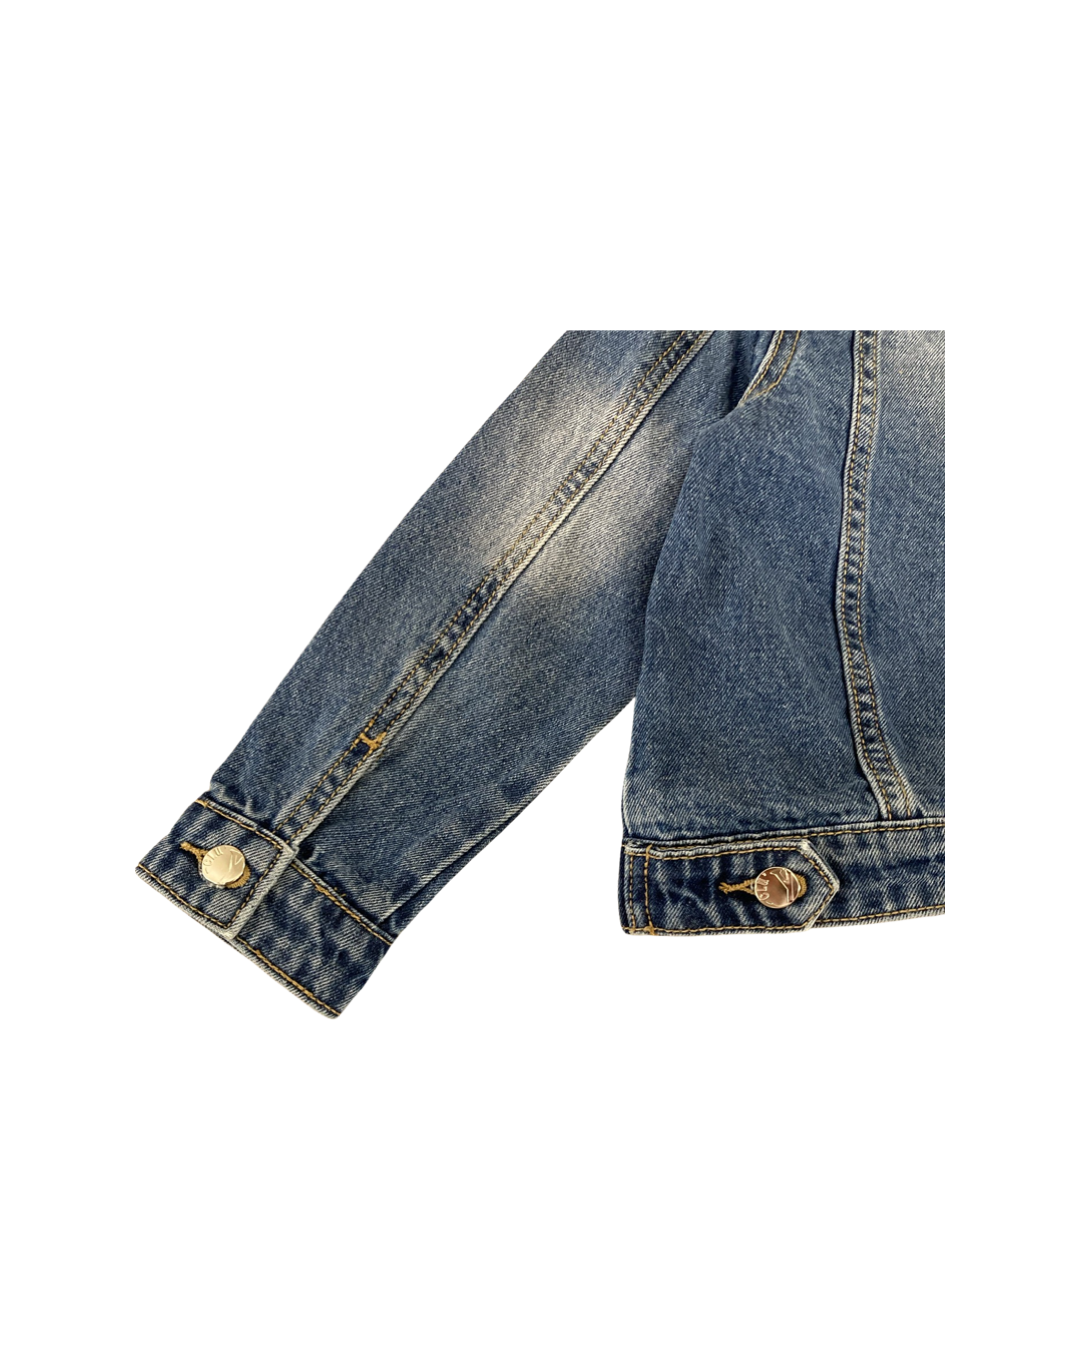 giacca , Giacca Jeans per Ragazzo da 8anni a 16anni Y-Clu BY9100 - BabyBimbo 0-16, abbigliamento bambini